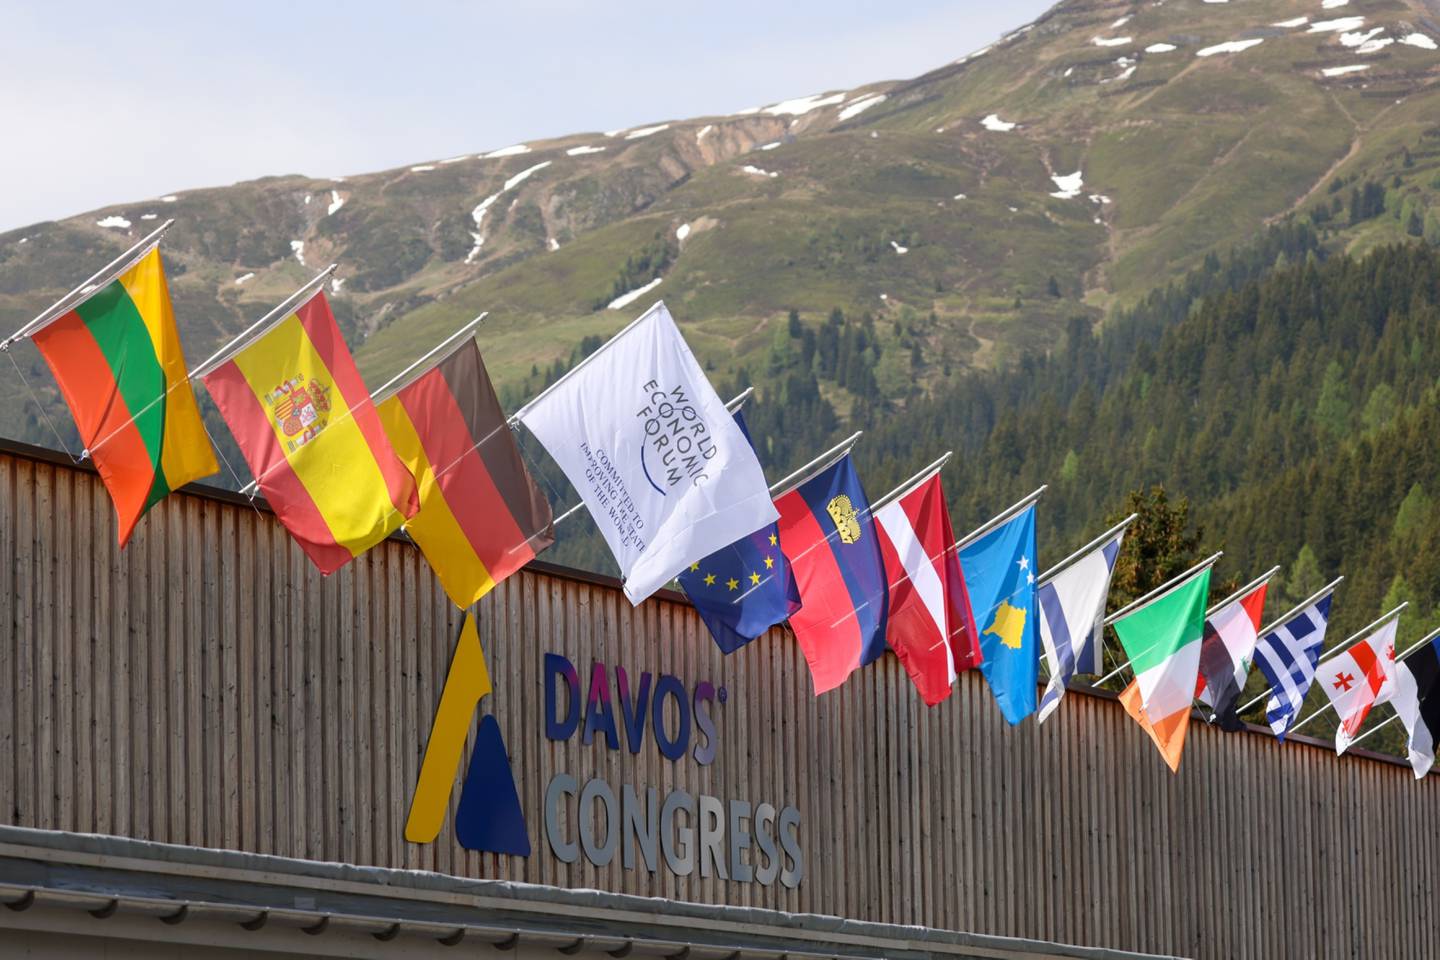 Evento acontece em Davos, na Suíça, de 22 a 26 de maio